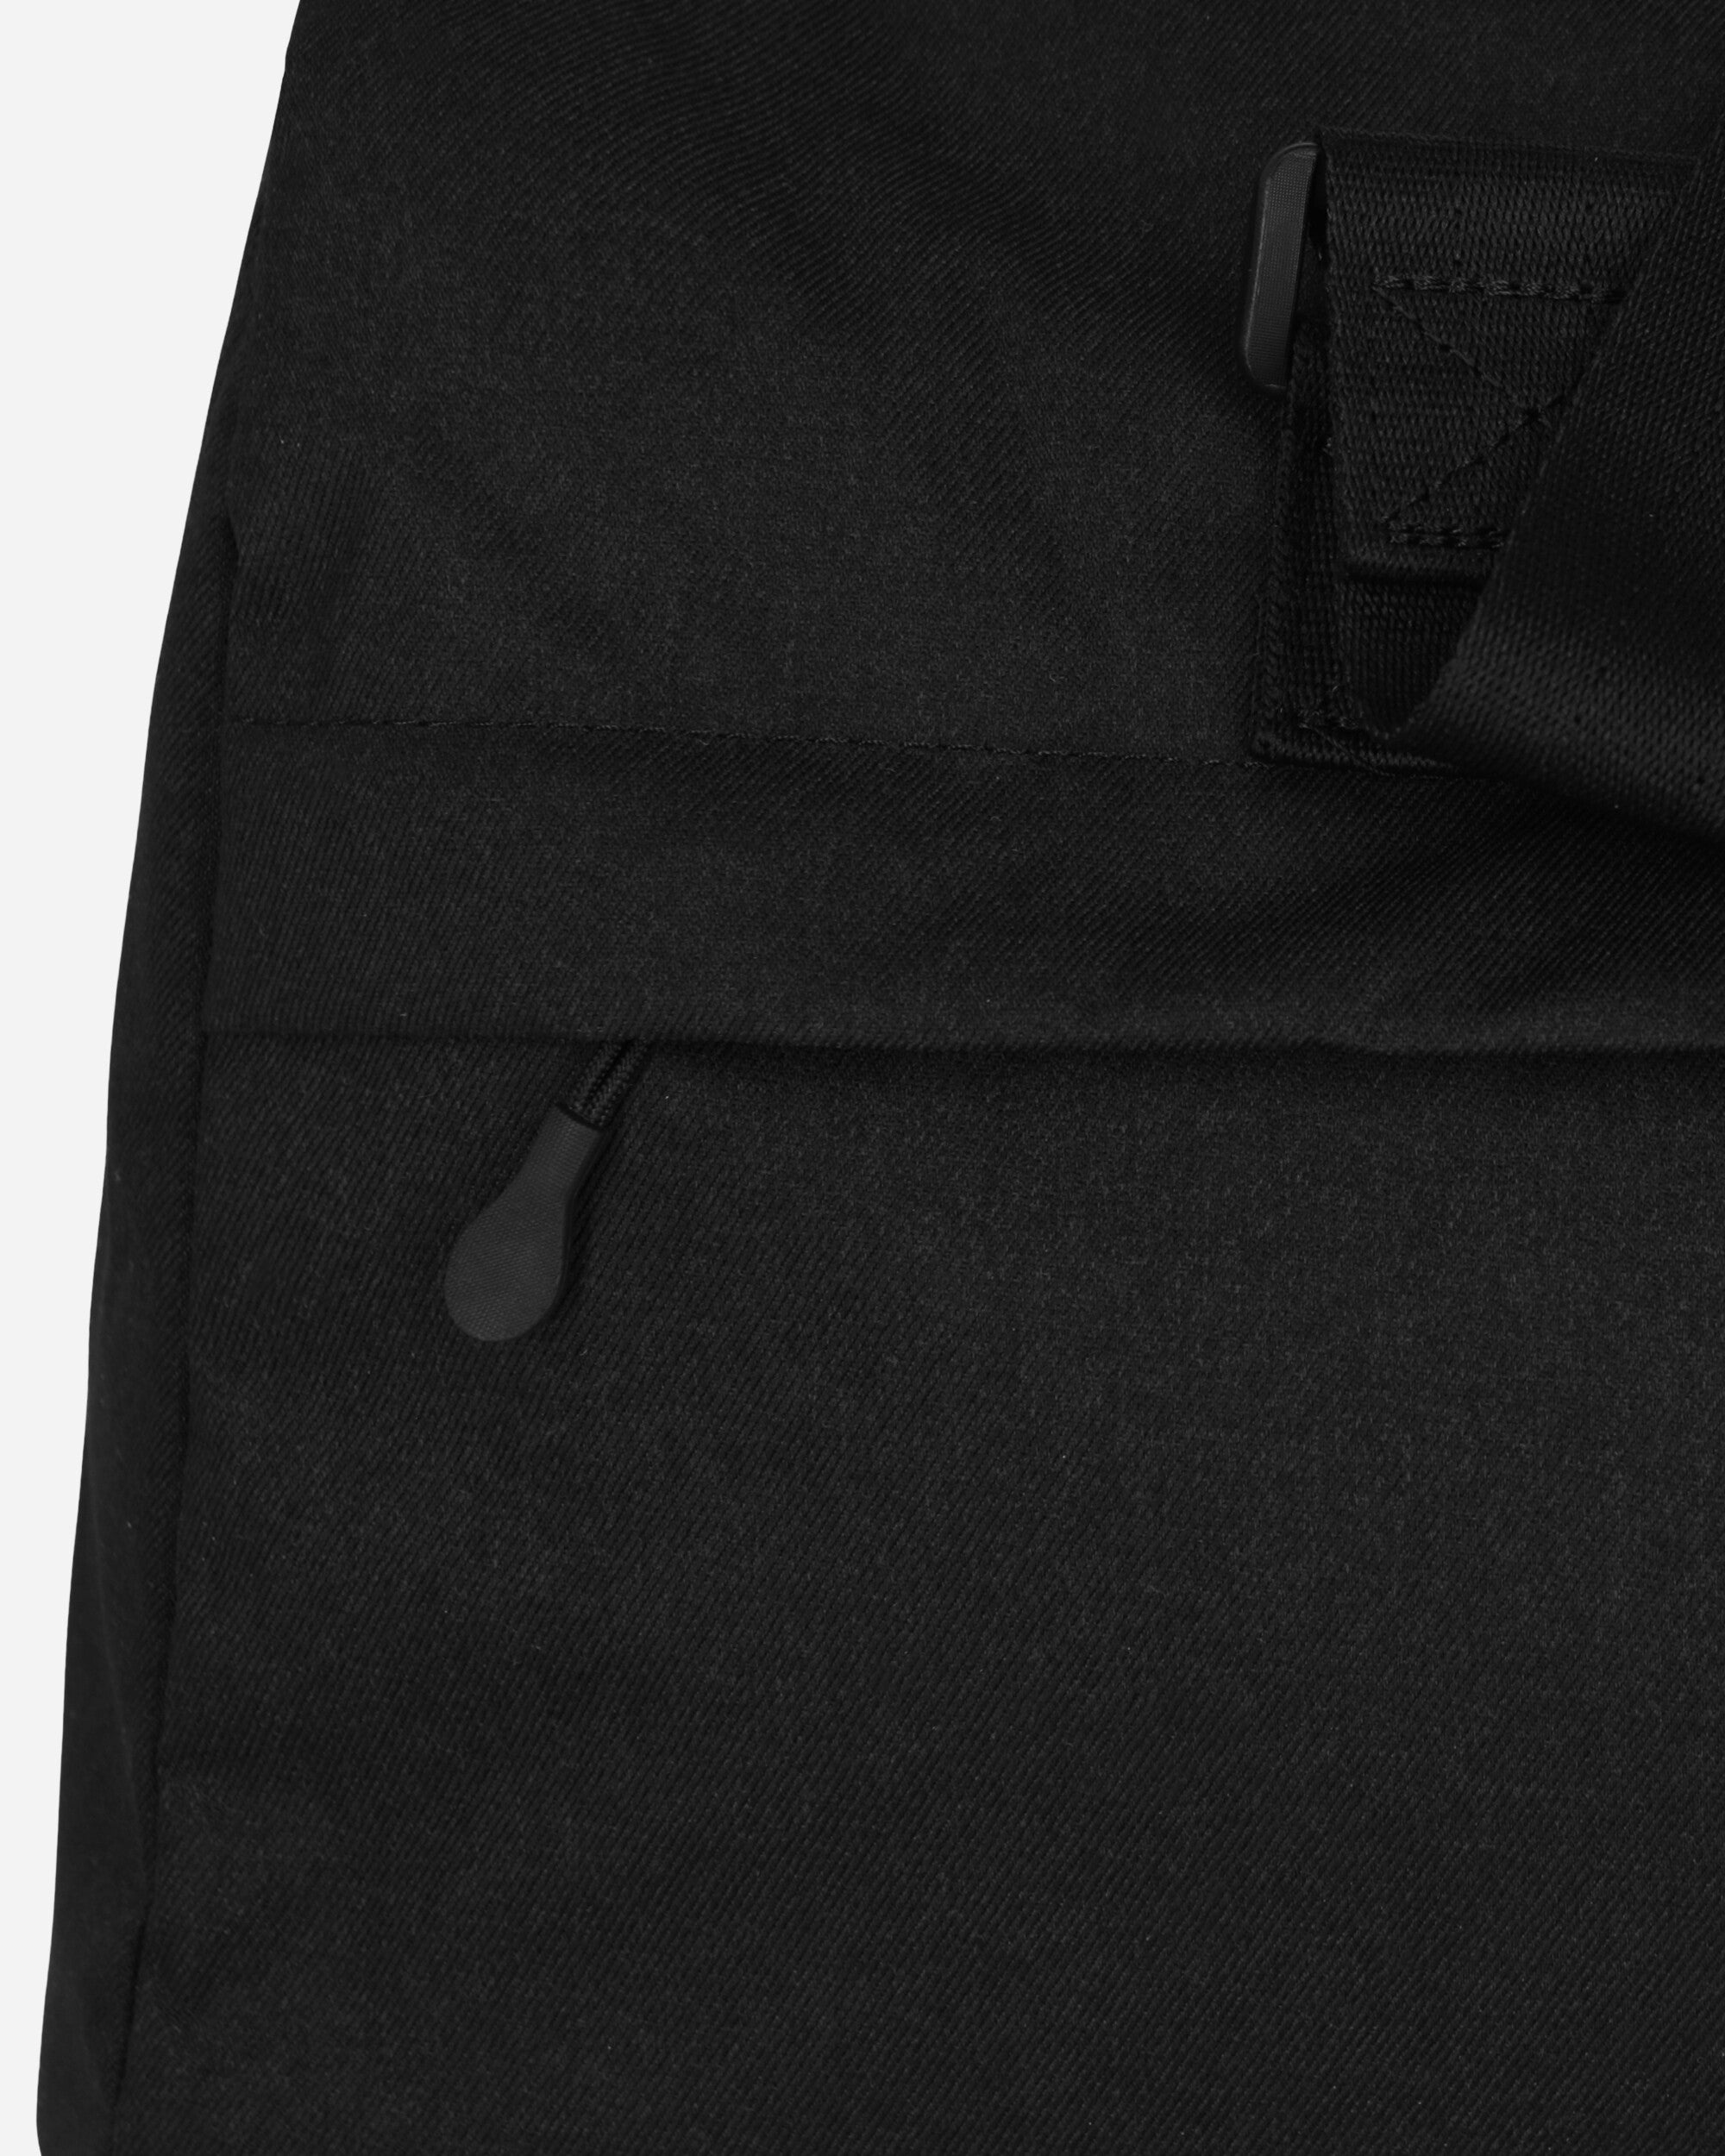 Premium Duffel Bag Black - 7